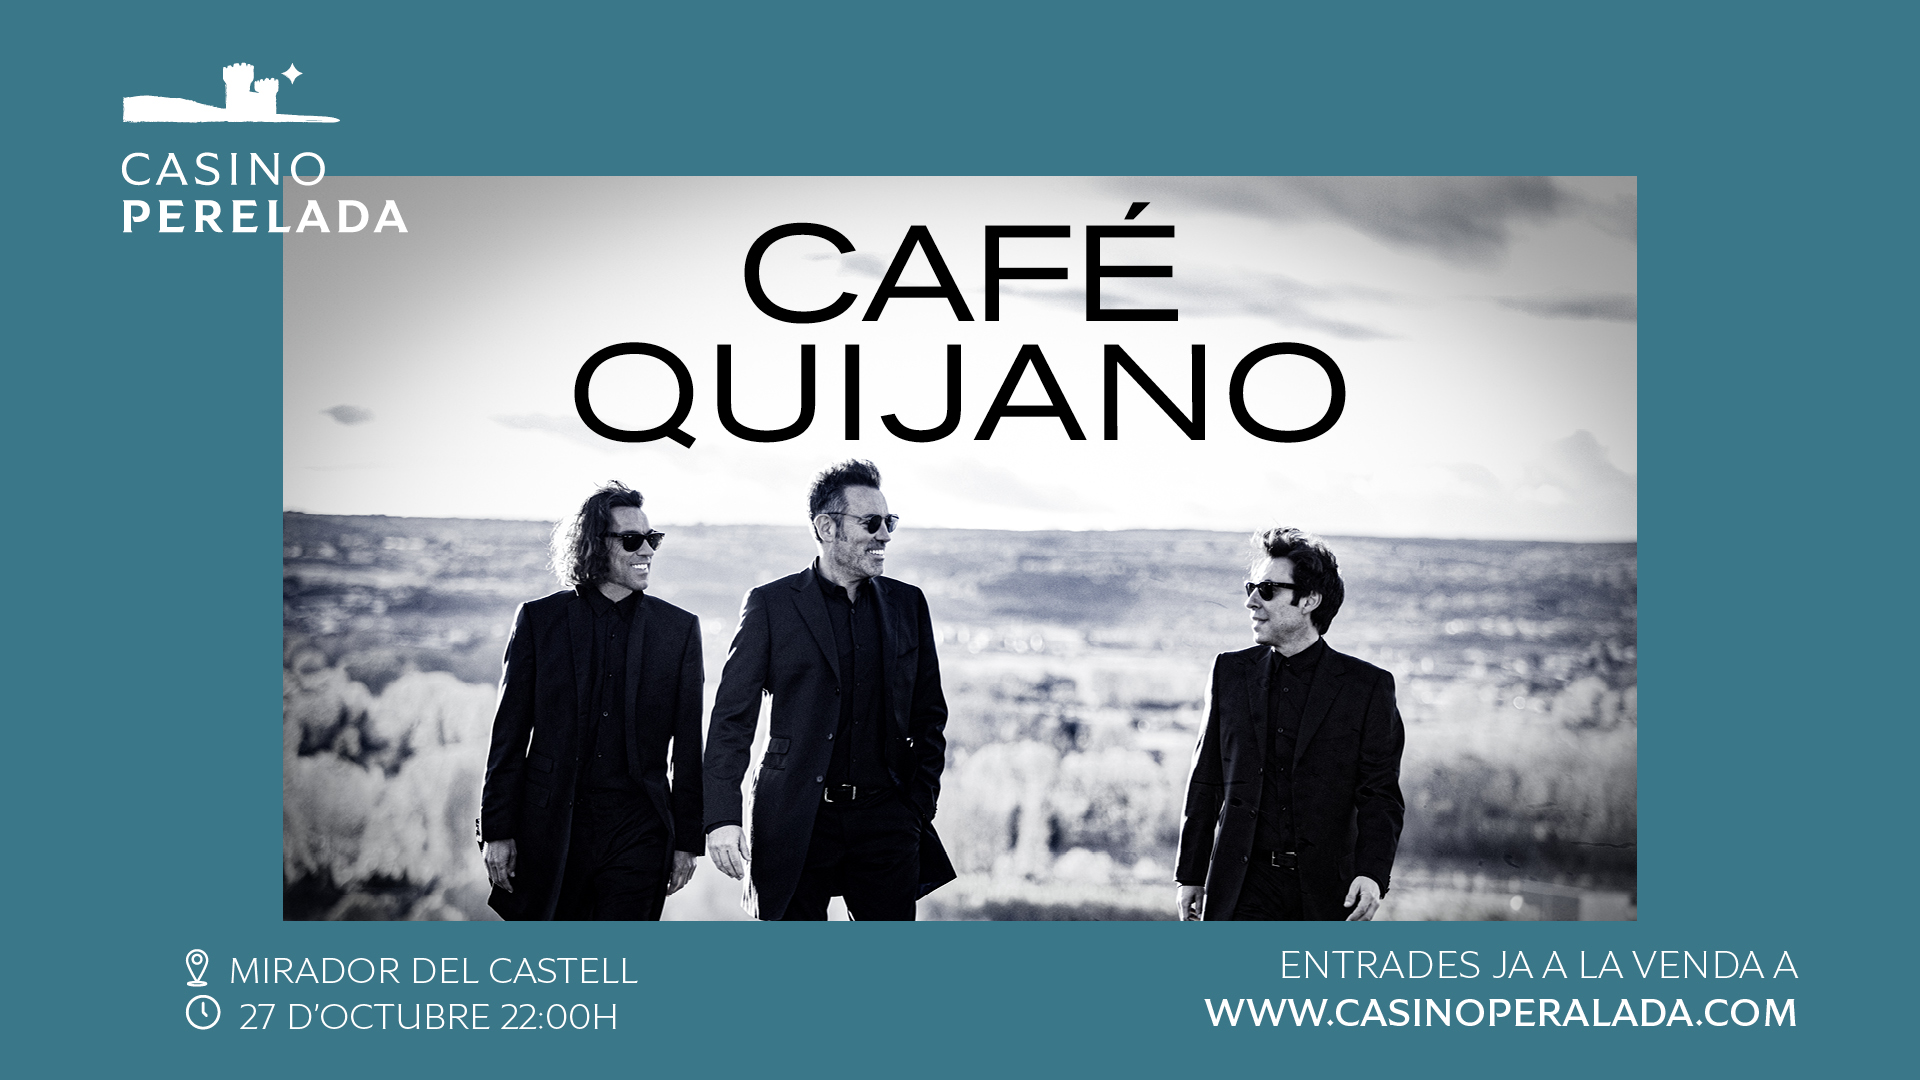 Café Quijano actuará en Casino Perelada